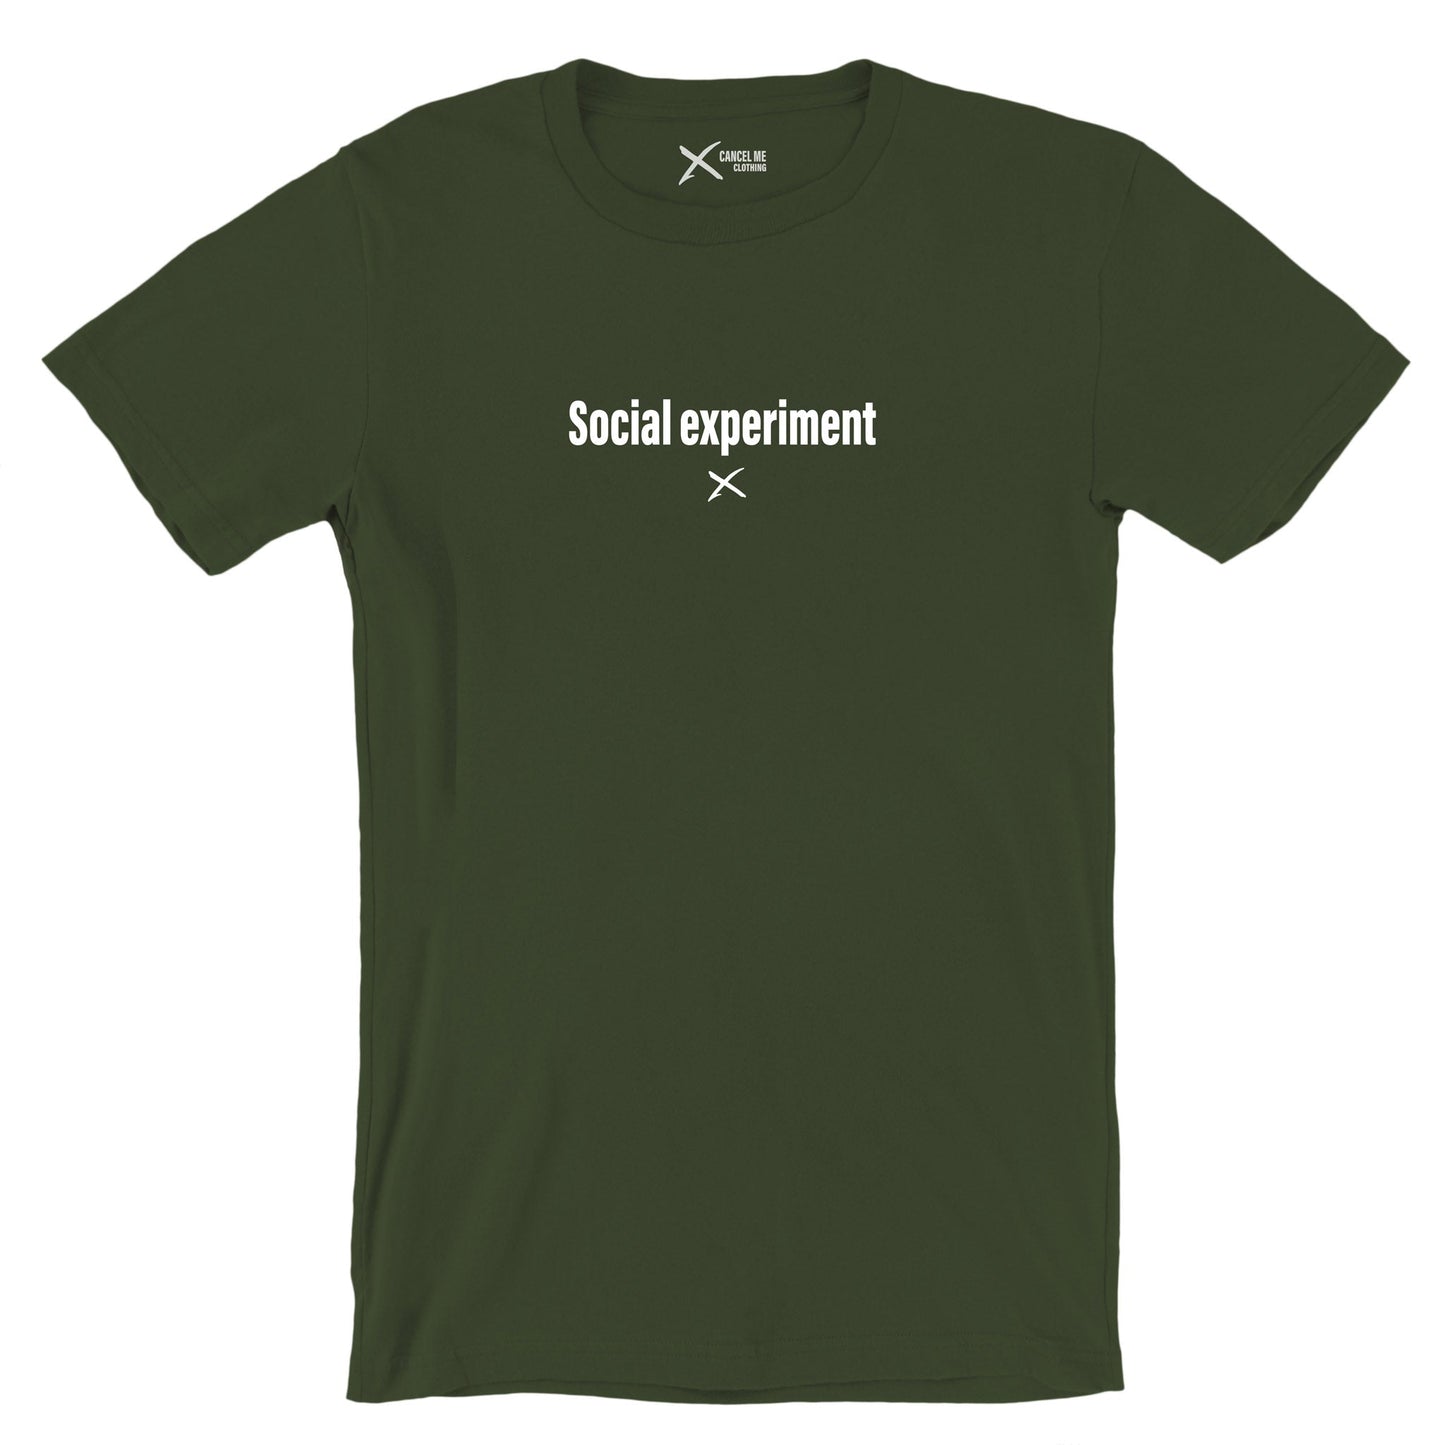 Social experiment - Shirt